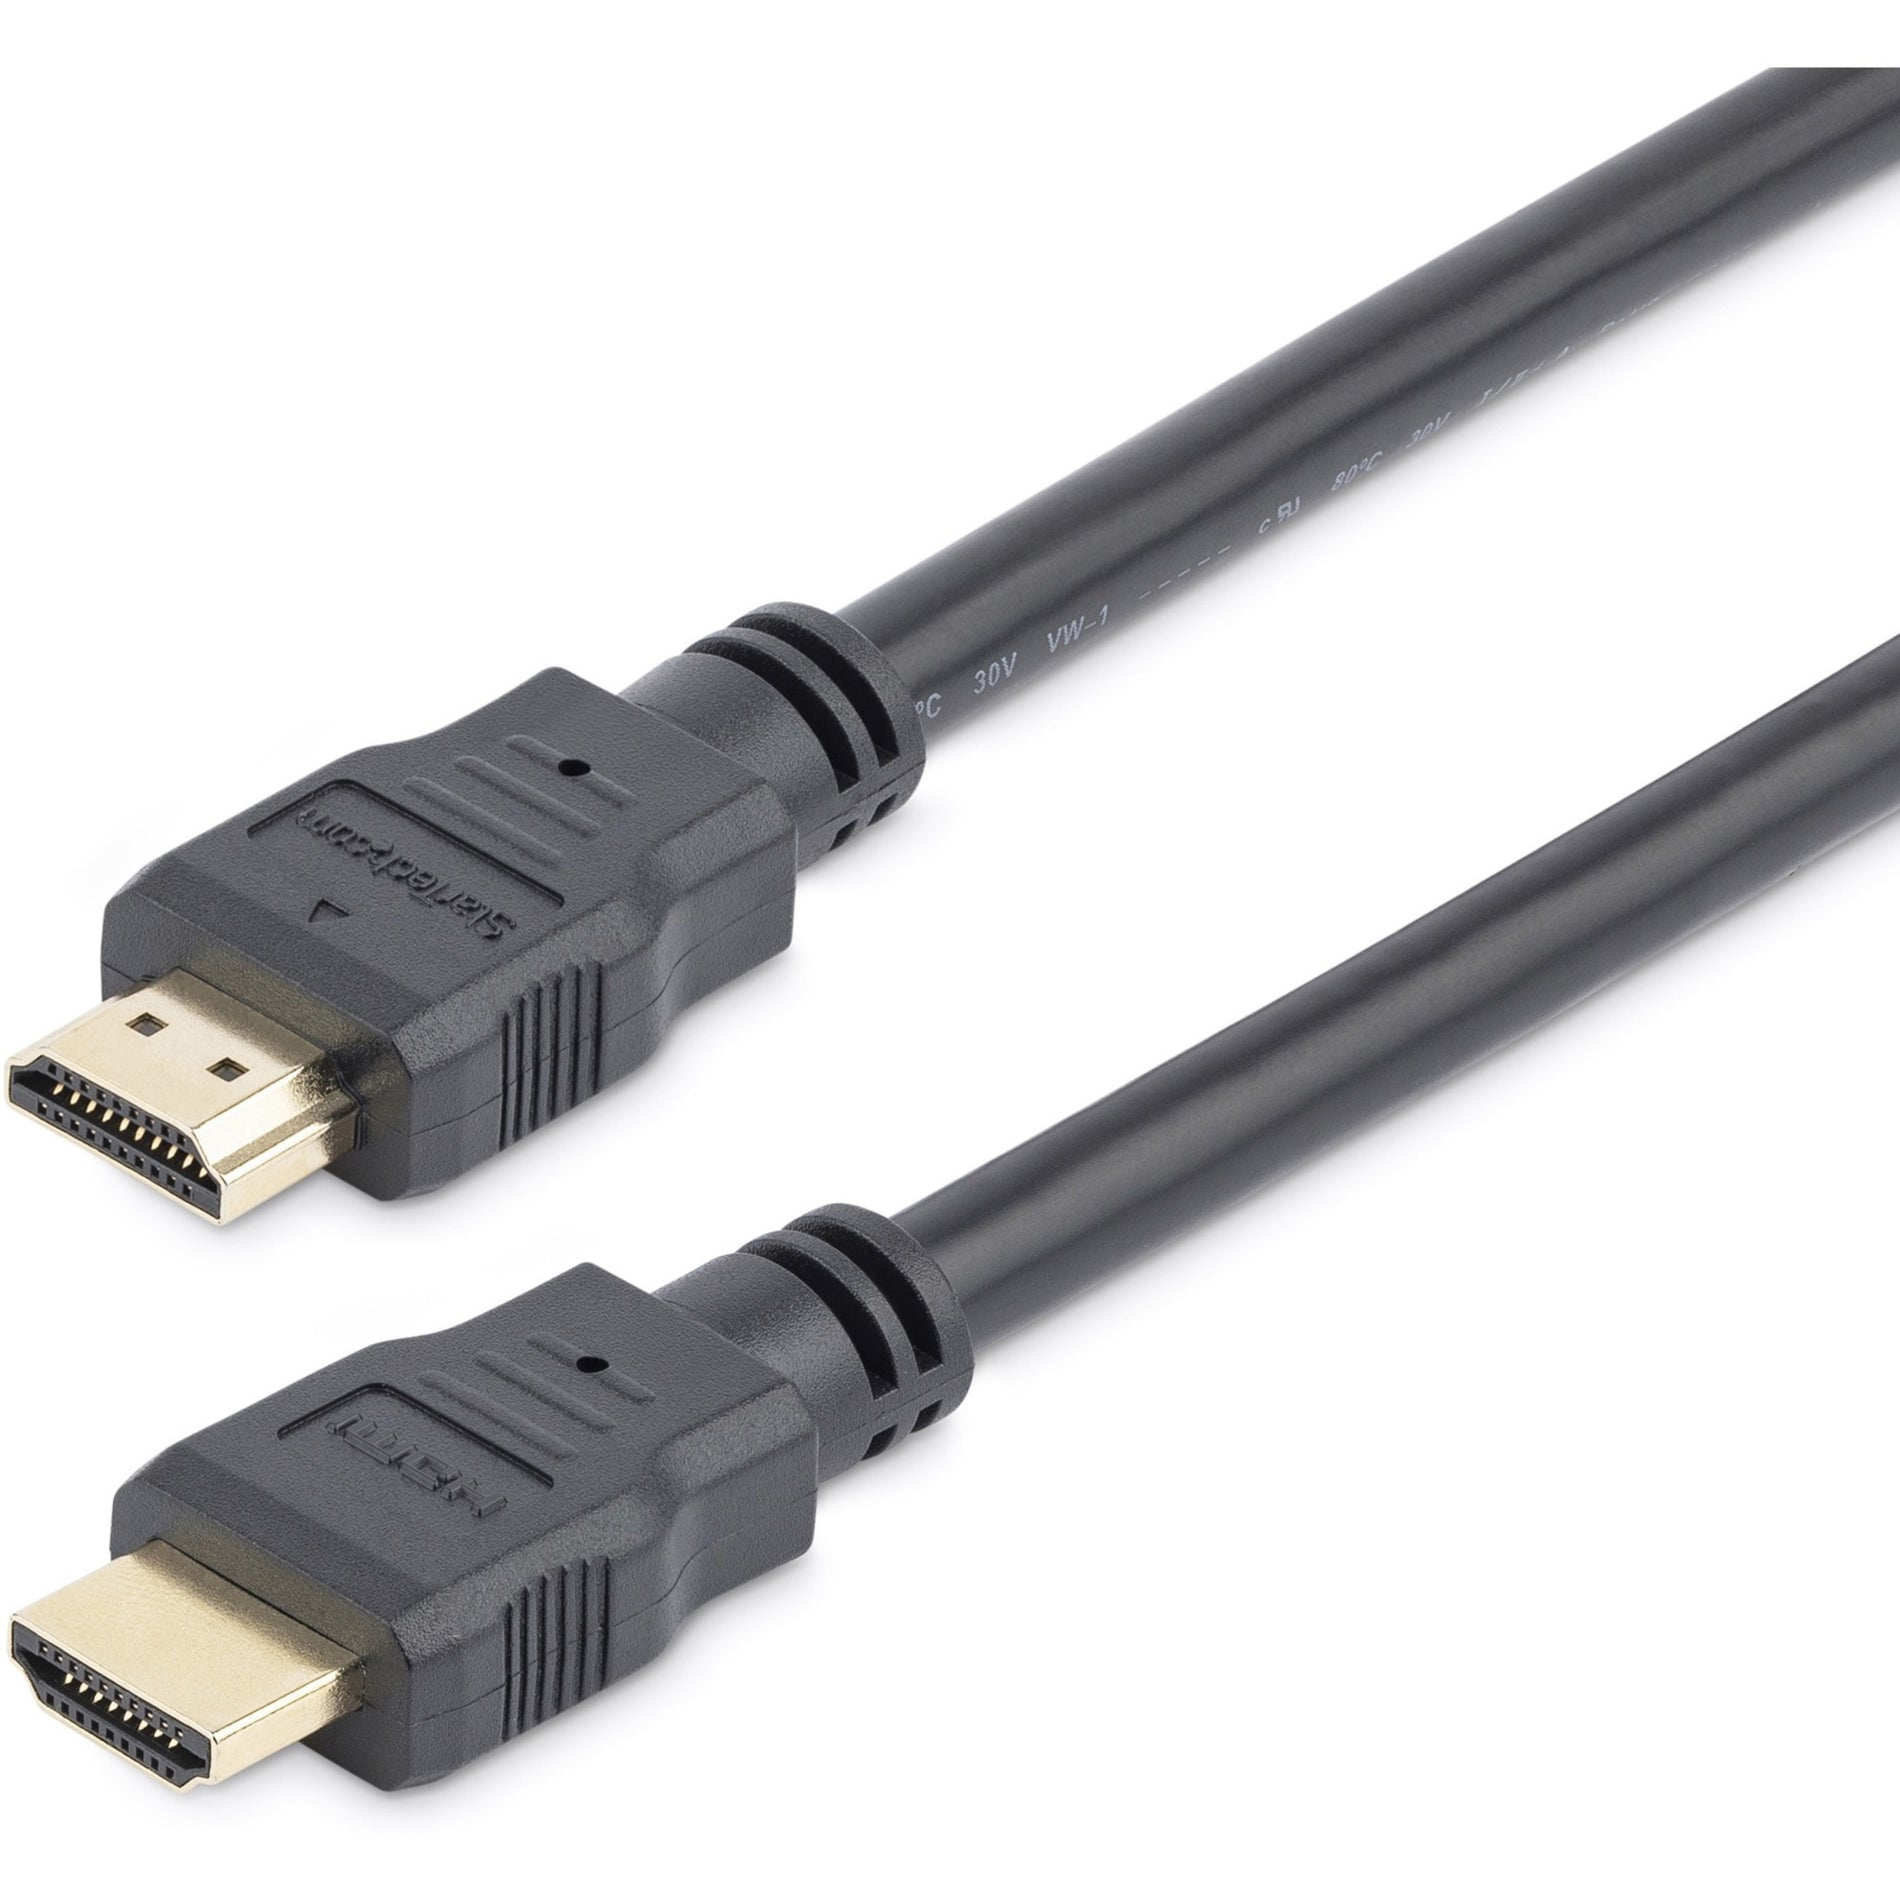 领卓科技（StarTech.com） 高清晰度 HDMI 电缆 超高清 4k x 2k HDMI 电缆 成型，防拉力，防腐蚀，镀金连接器